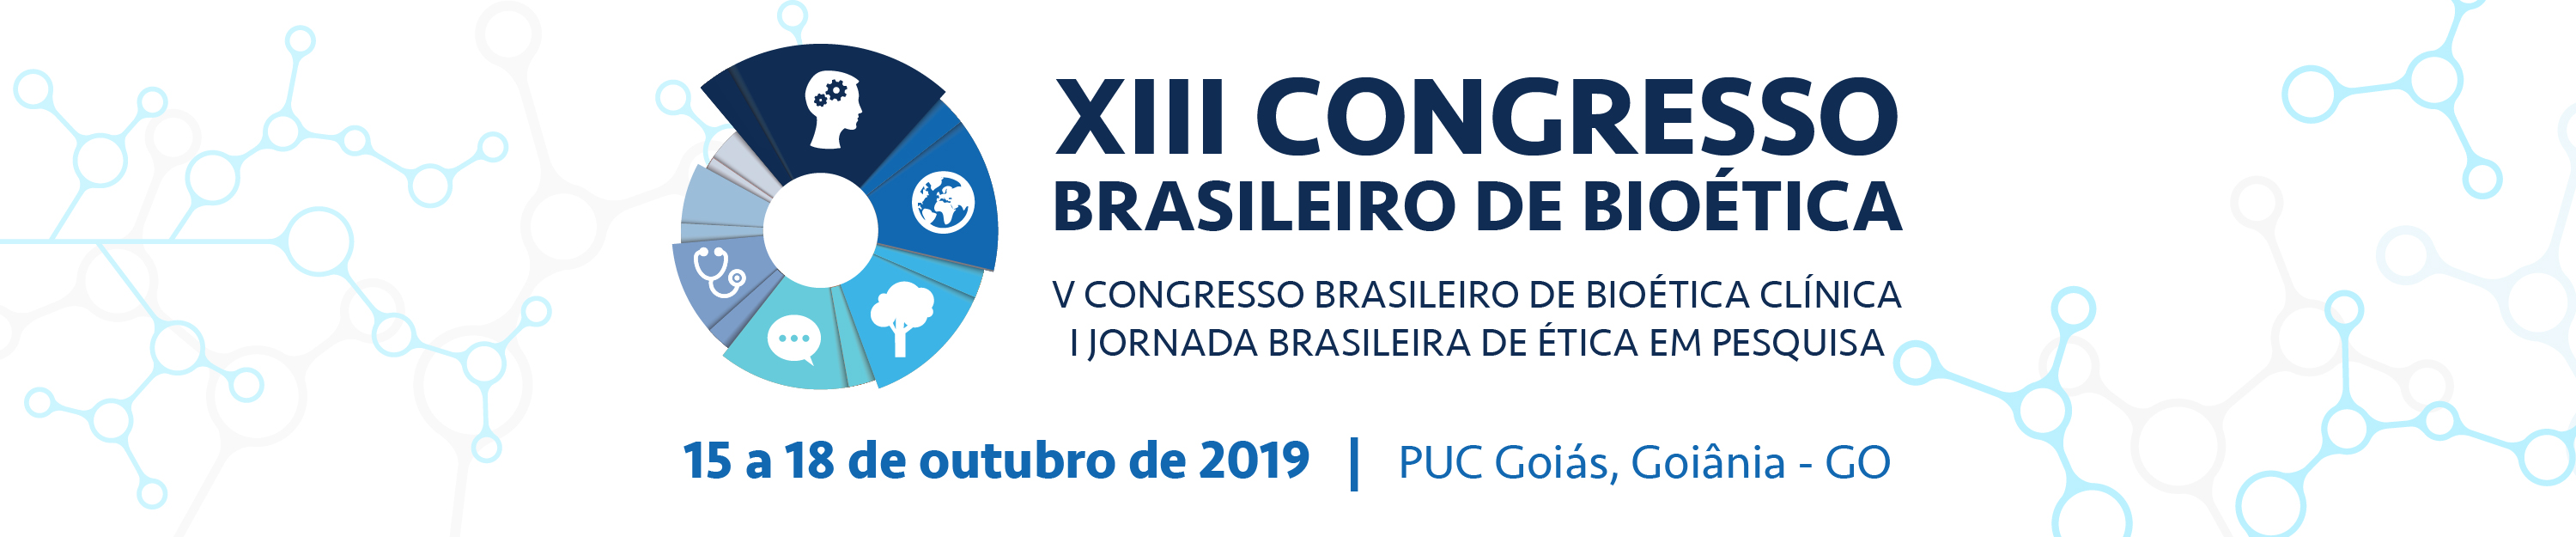 XIII Congresso Brasileiro de Bioética, V Congresso Brasileiro de Bioética Clínica, Jornada Brasileira de Ética na Pesquisa